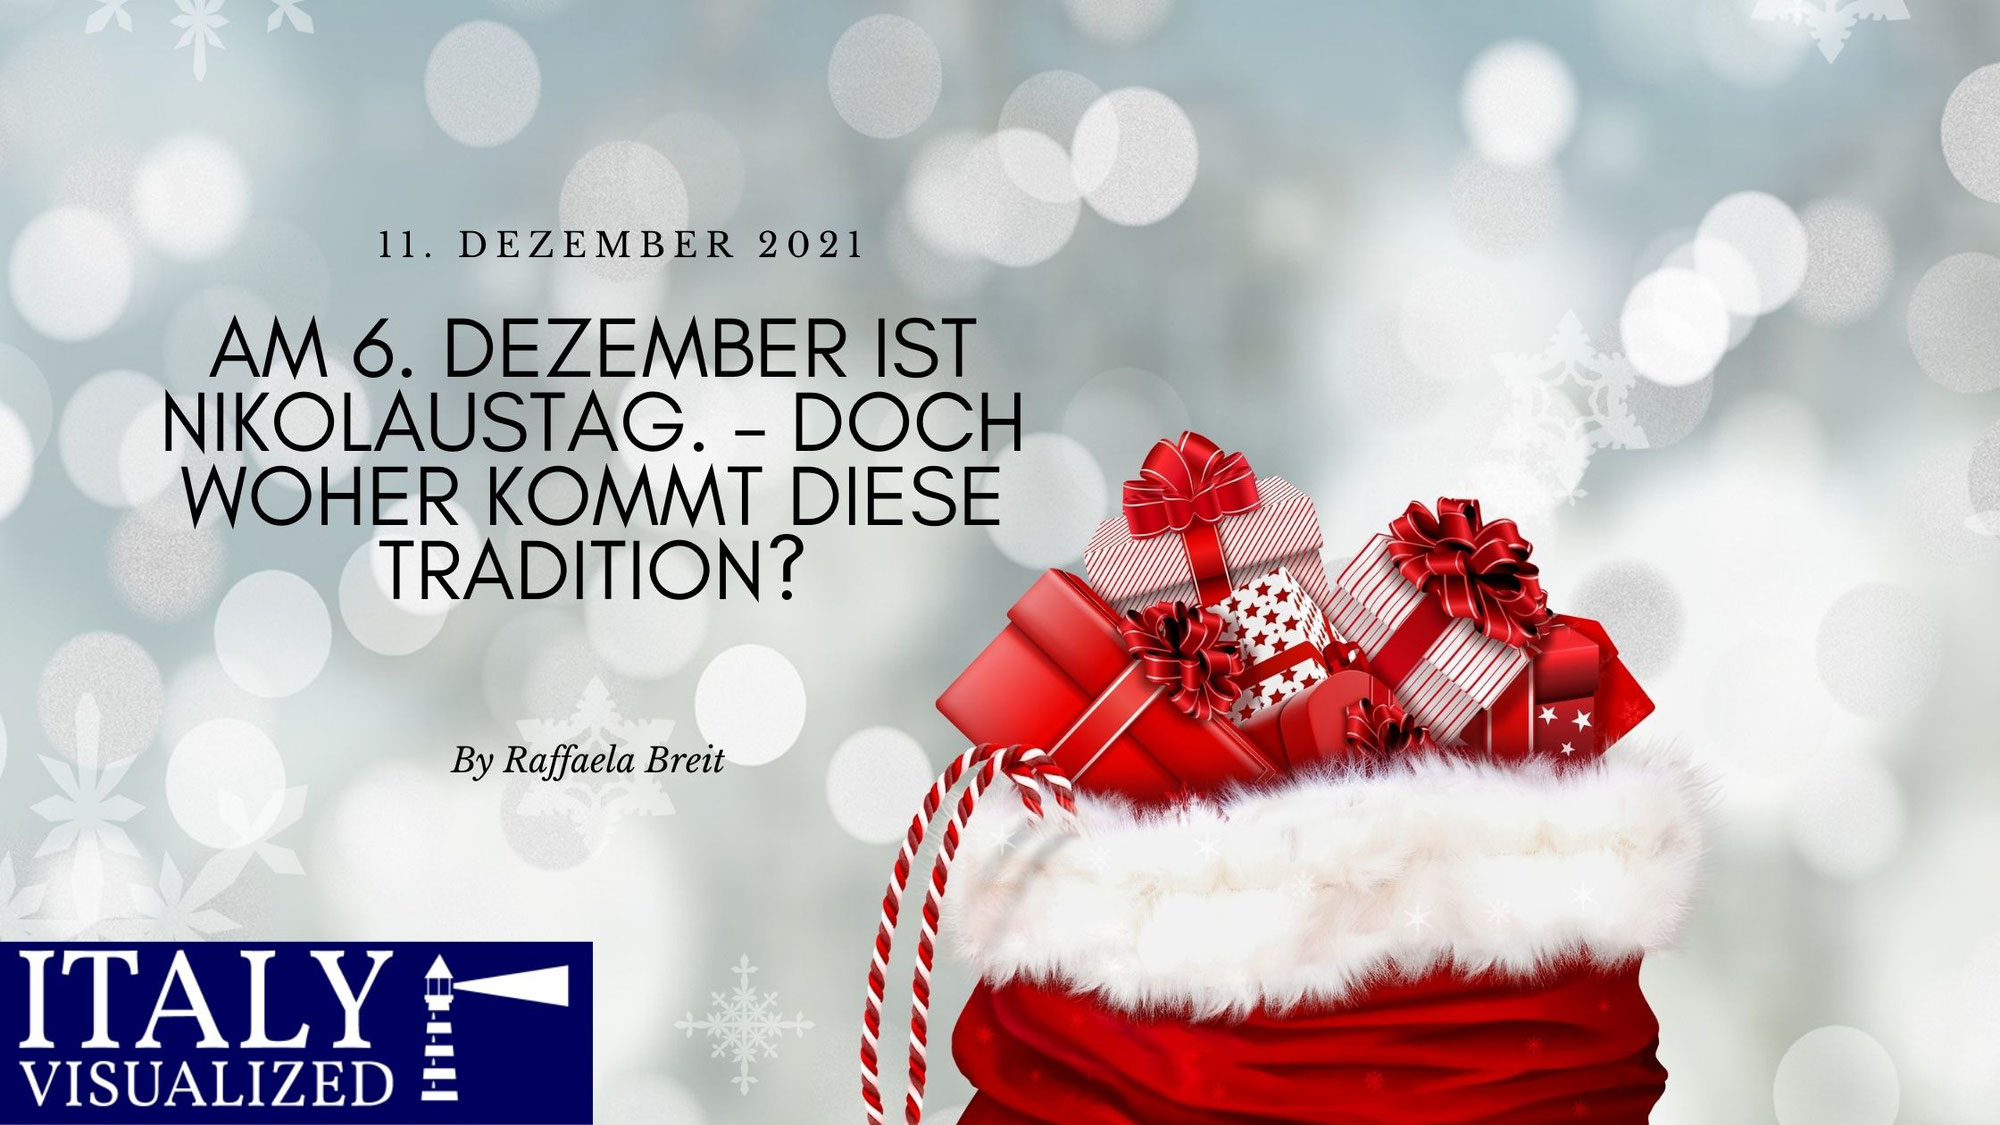 Am 6. Dezember ist Nikolaustag. – Doch woher kommt diese Tradition?